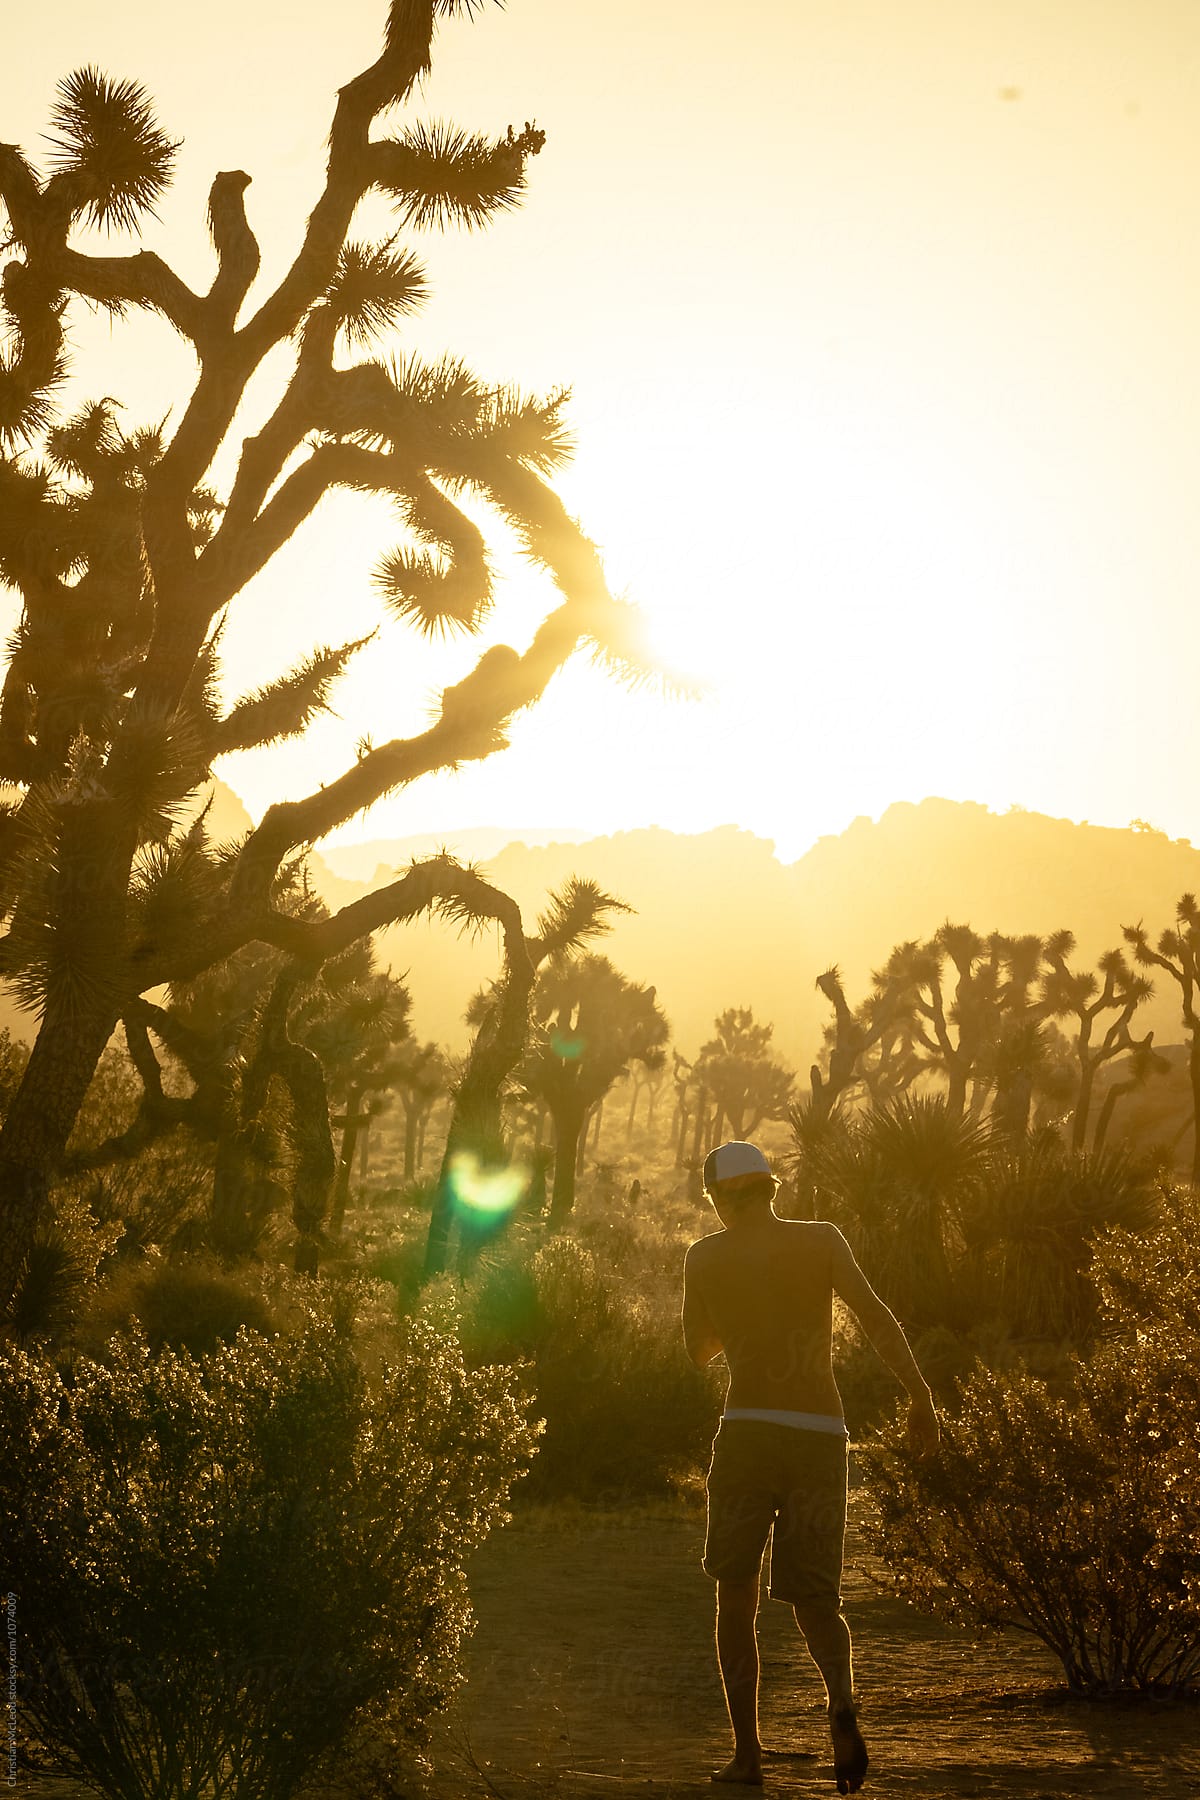 Morning stroll through the desert of Joshua tree